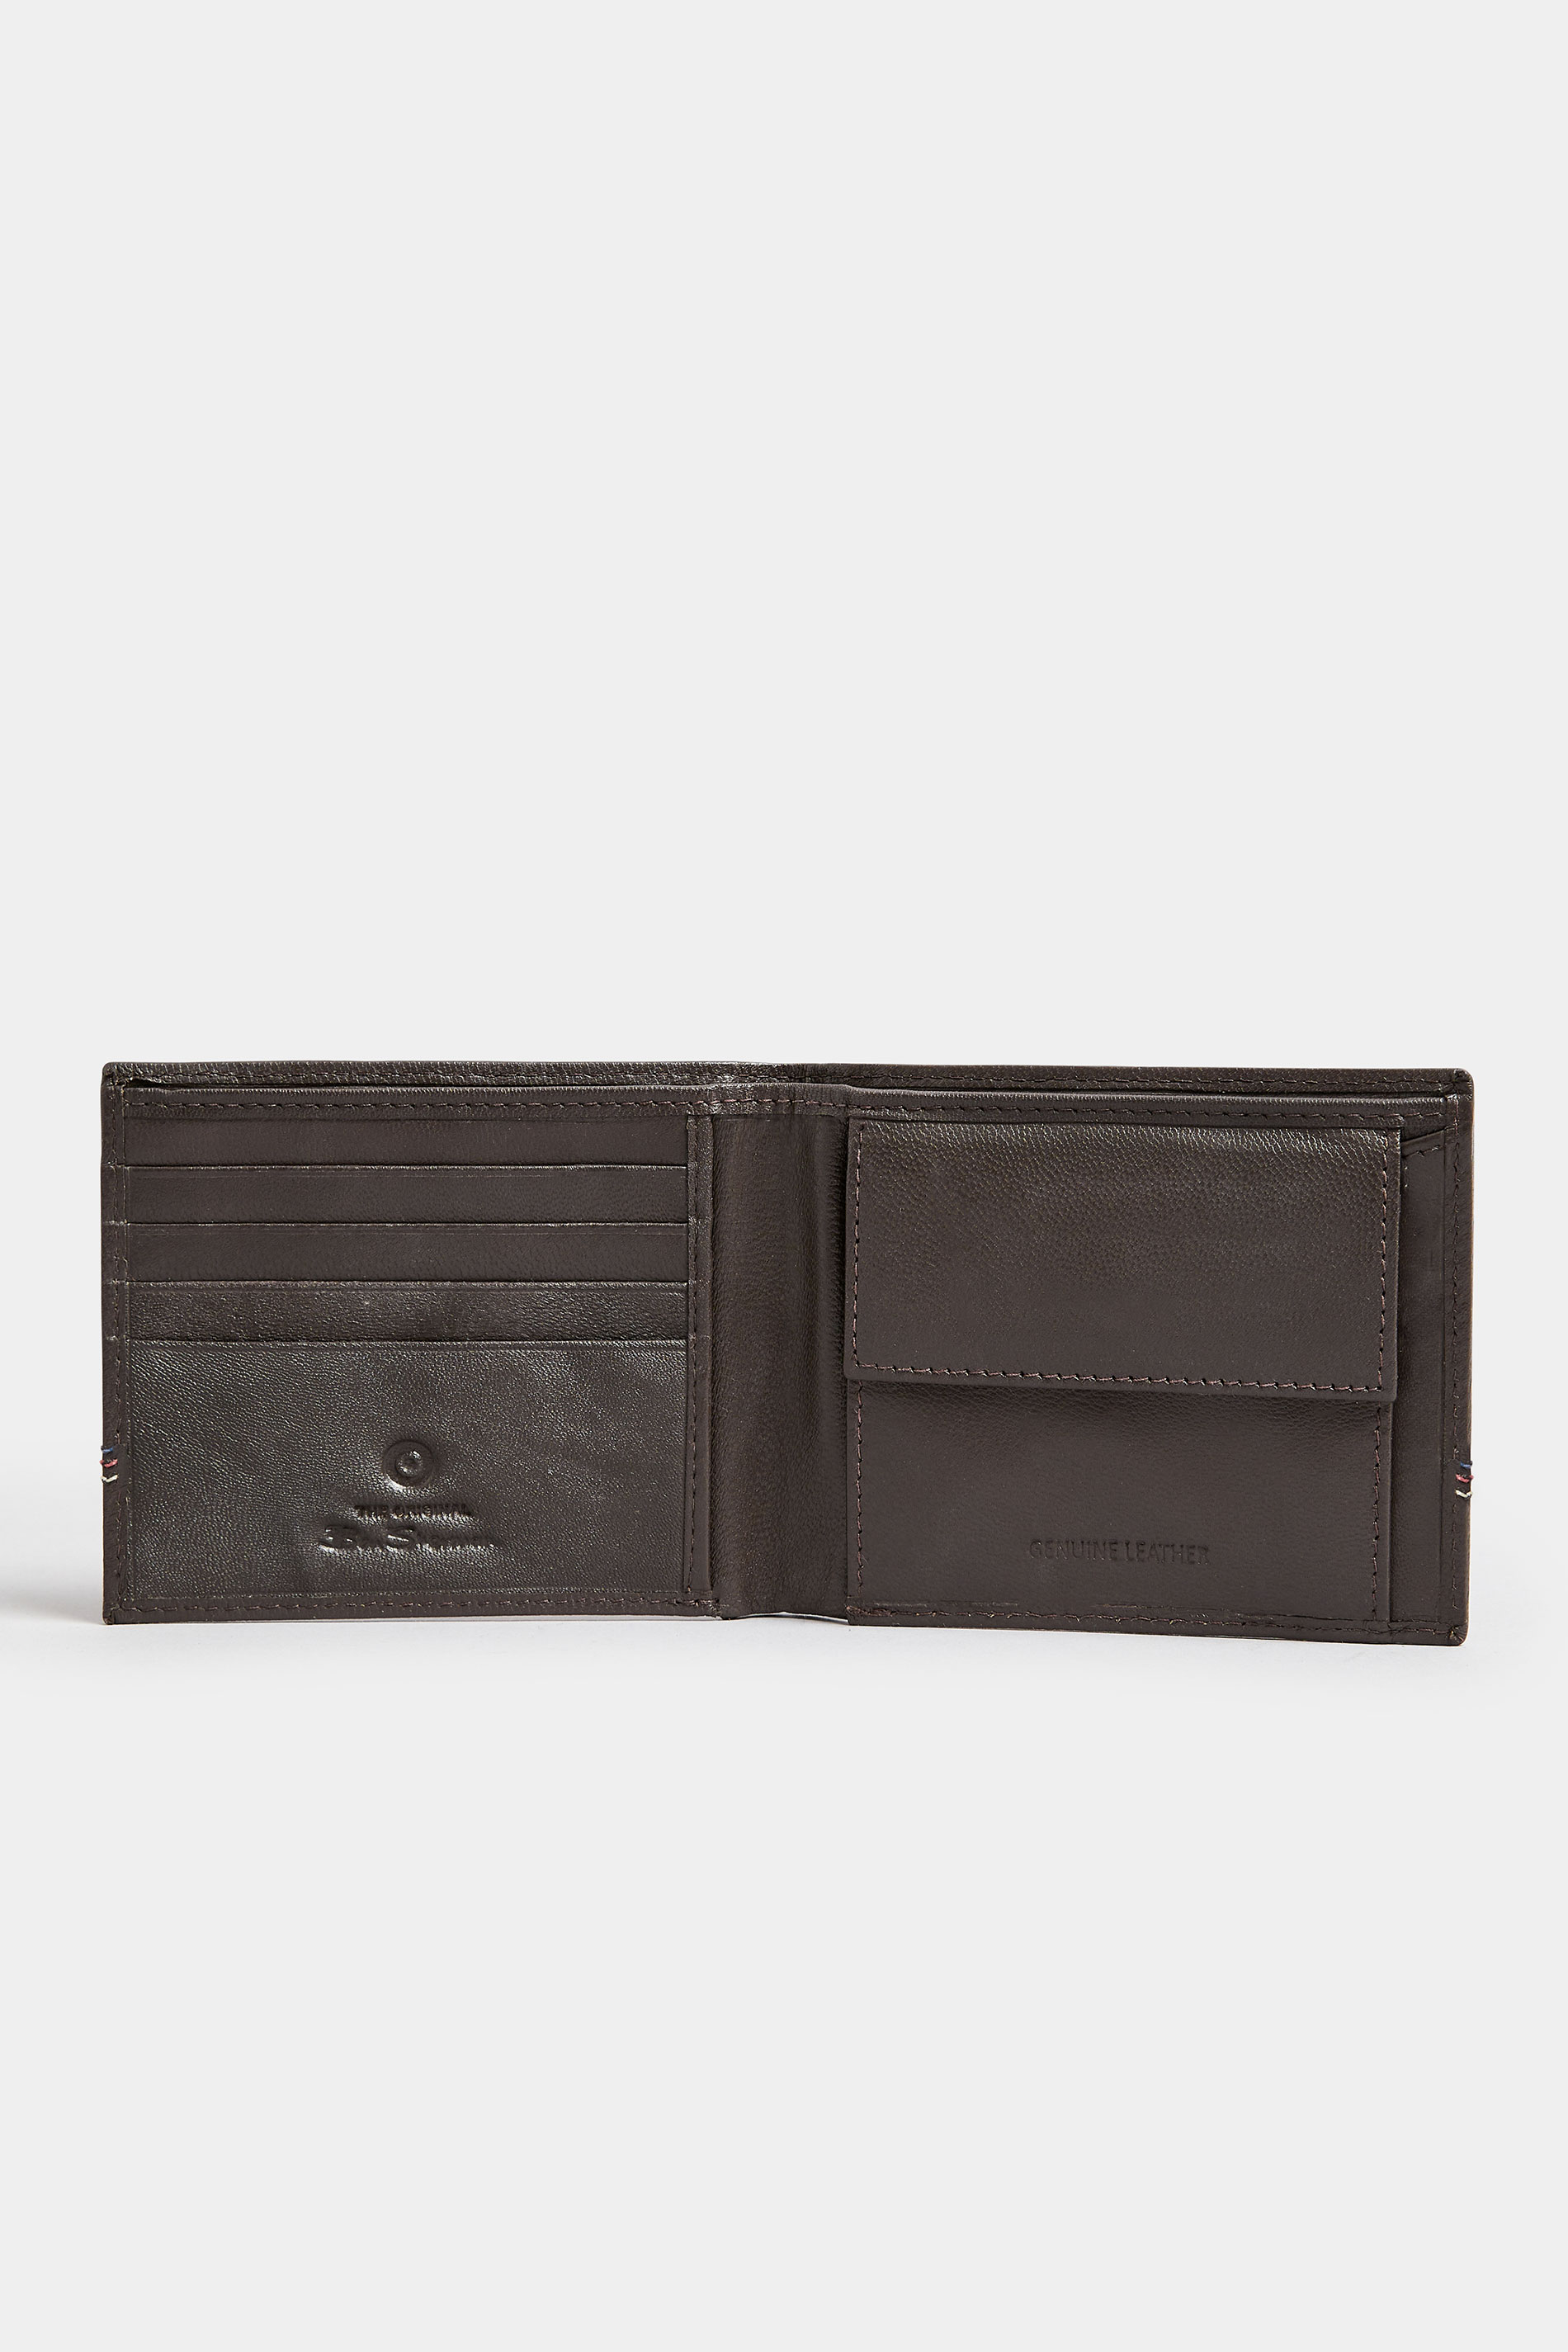 BEN SHERMAN Brown Leather 'Gillespie' Bi-Fold Wallet | BadRhino 2